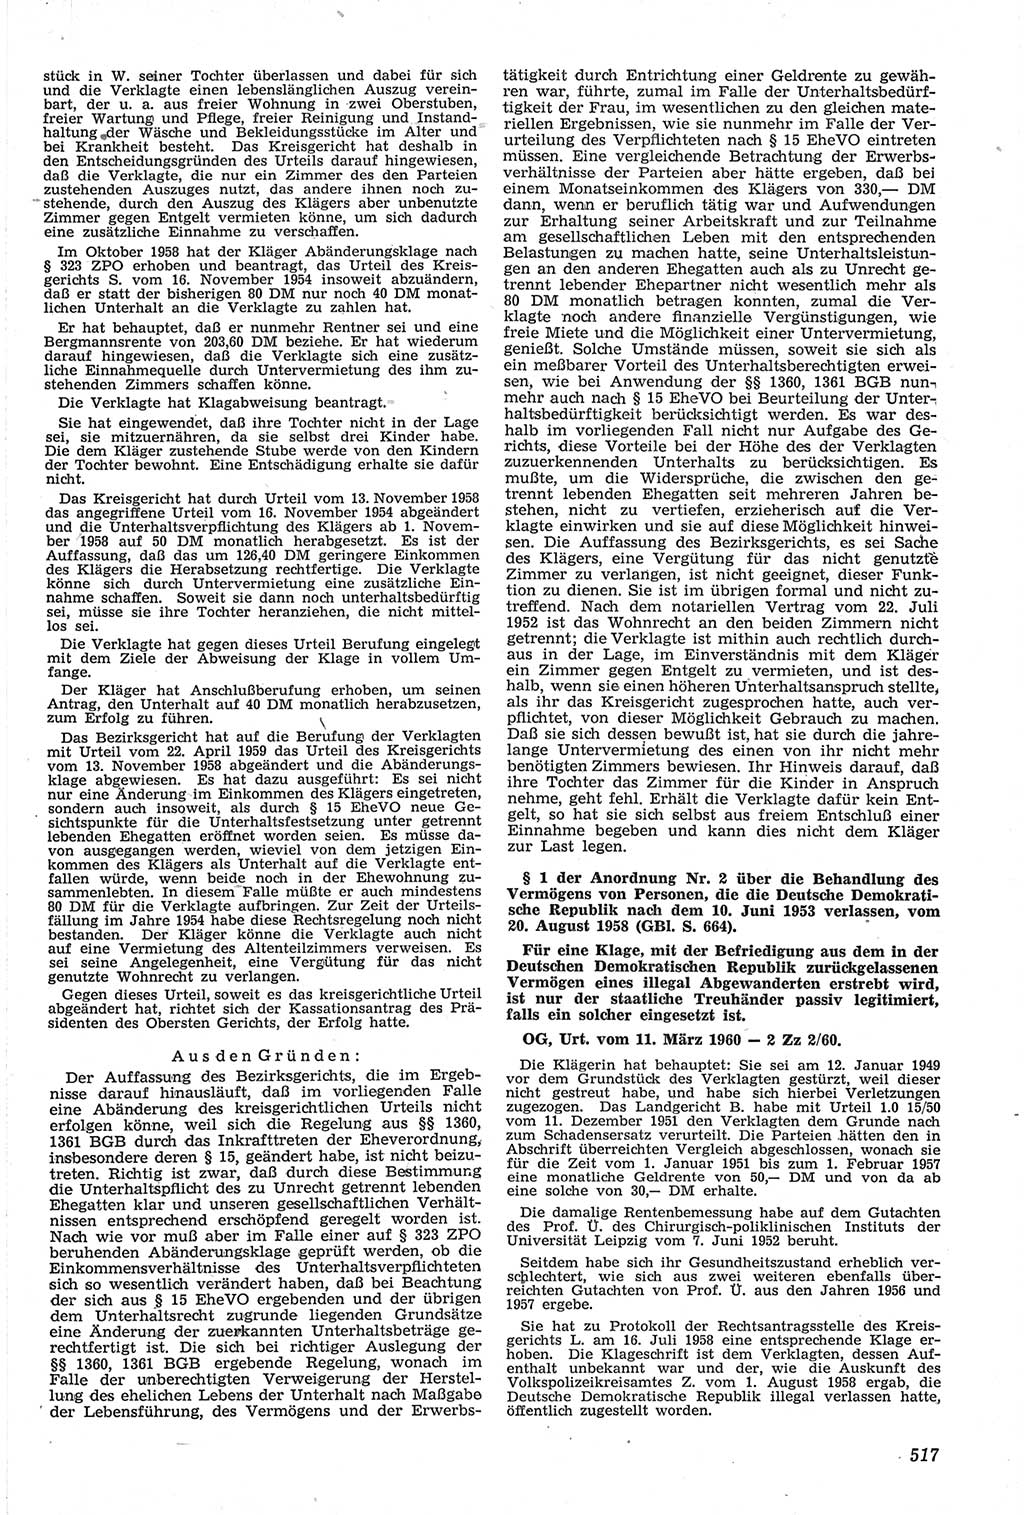 Neue Justiz (NJ), Zeitschrift für Recht und Rechtswissenschaft [Deutsche Demokratische Republik (DDR)], 14. Jahrgang 1960, Seite 517 (NJ DDR 1960, S. 517)